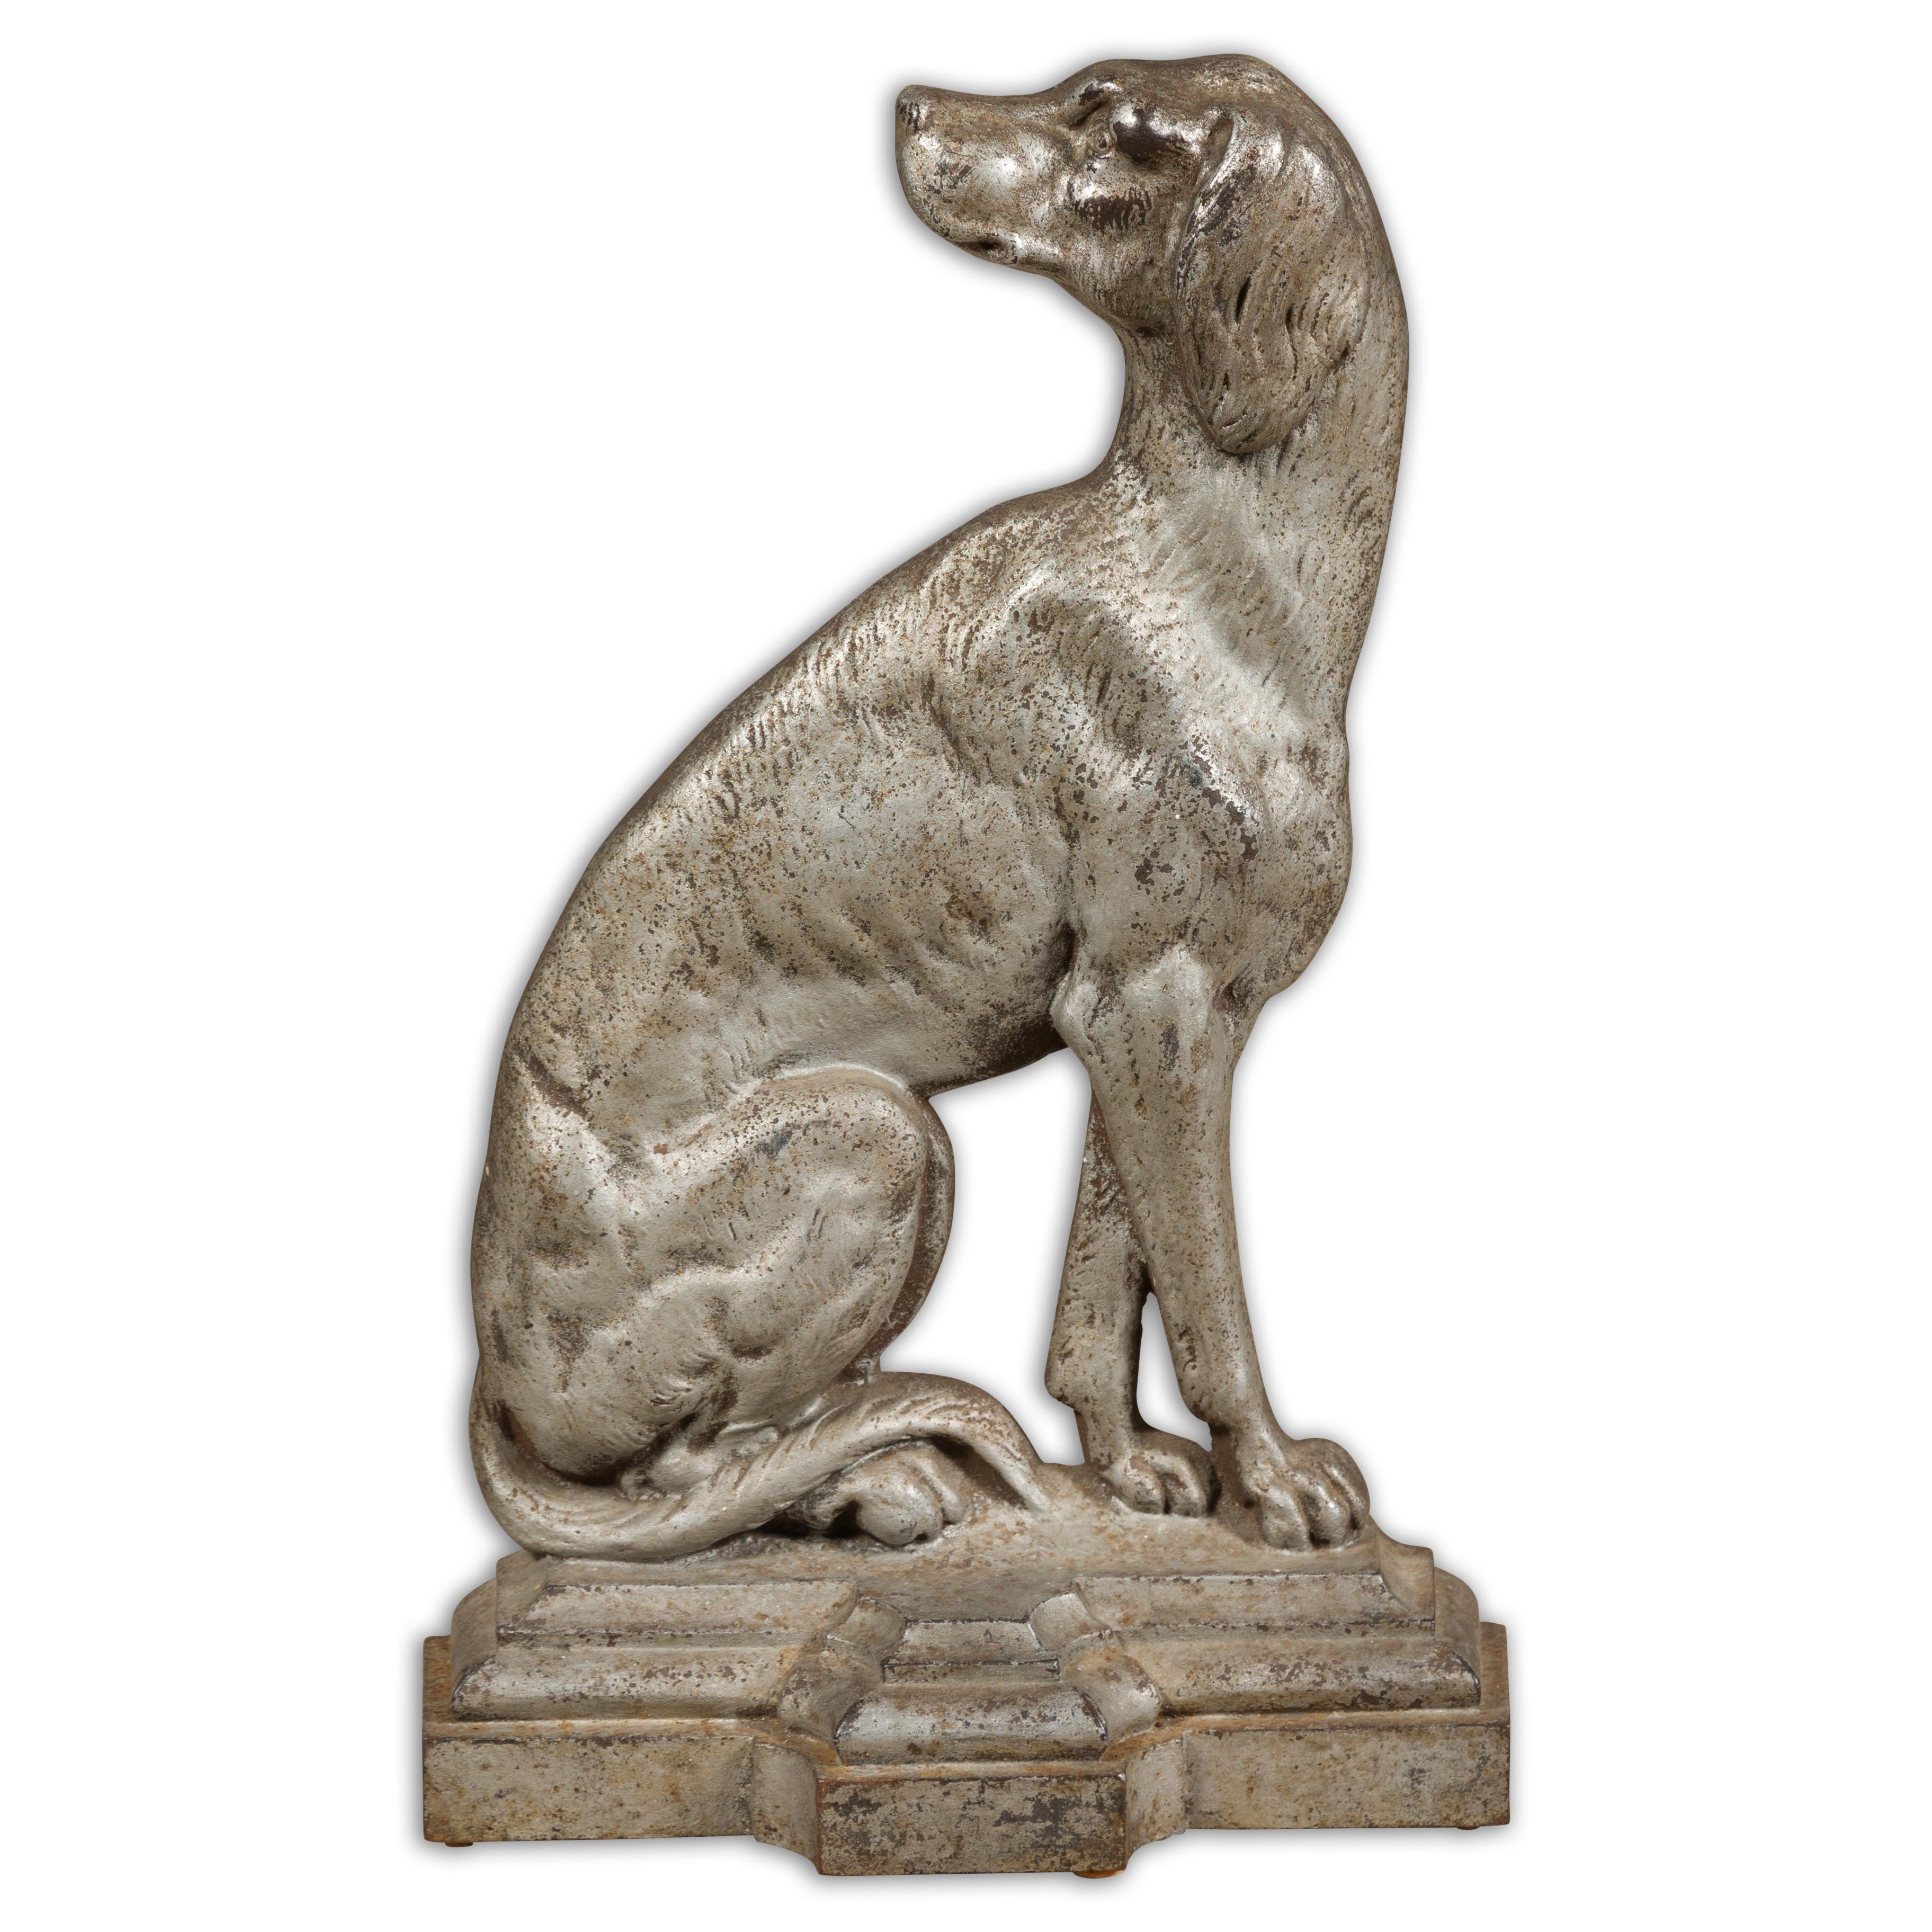 Ein englischer versilberter Türstopper aus der spätviktorianischen Zeit um 1880-1900, der einen Hund im Profil zeigt. Dieser englische versilberte Türstopper aus der spätviktorianischen Zeit (ca. 1880-1900) ist eine fesselnde Mischung aus